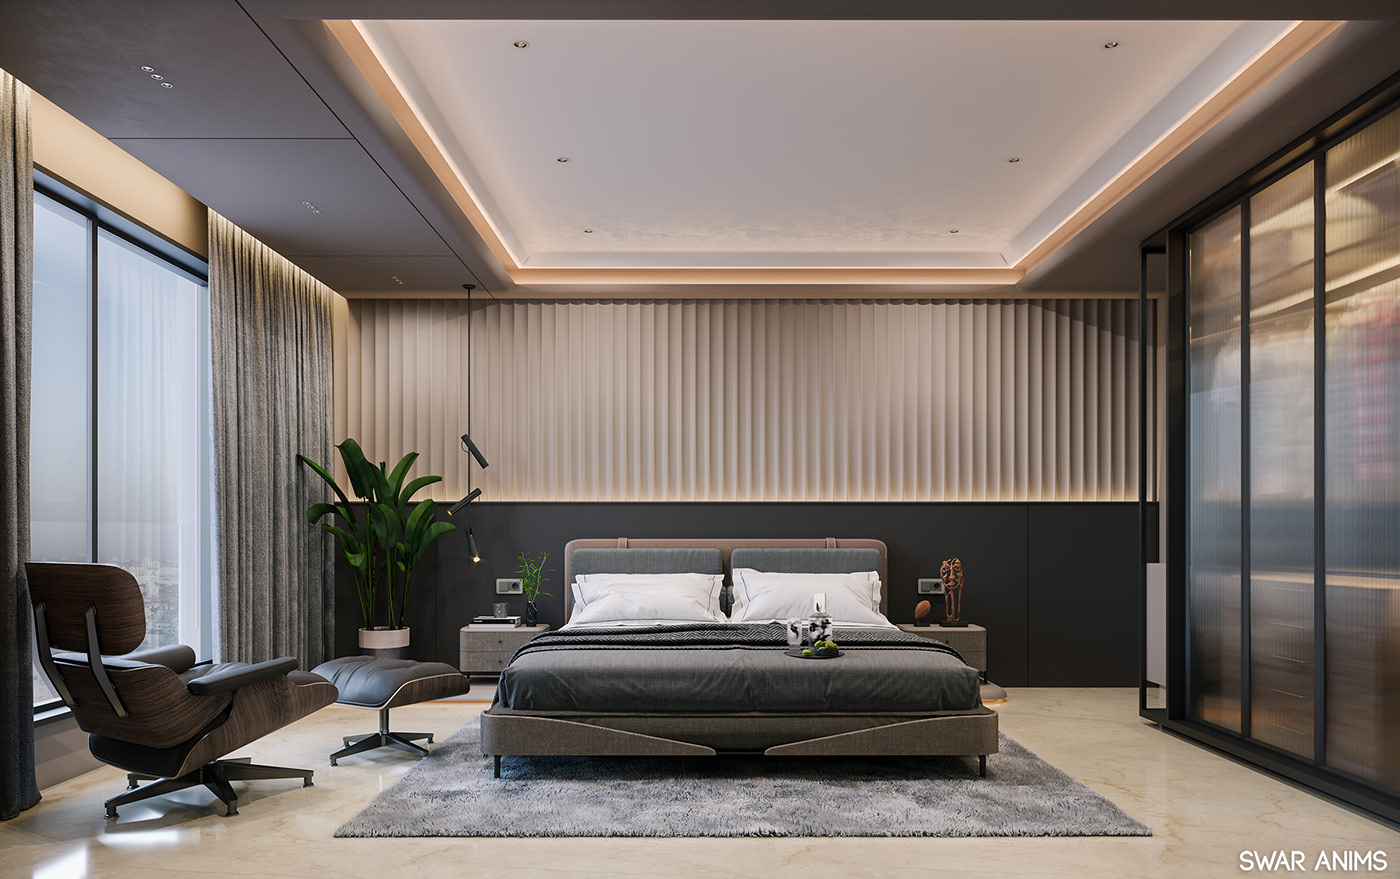 3D corona render  interior design  luxury modern Render viz architecture archviz CGI